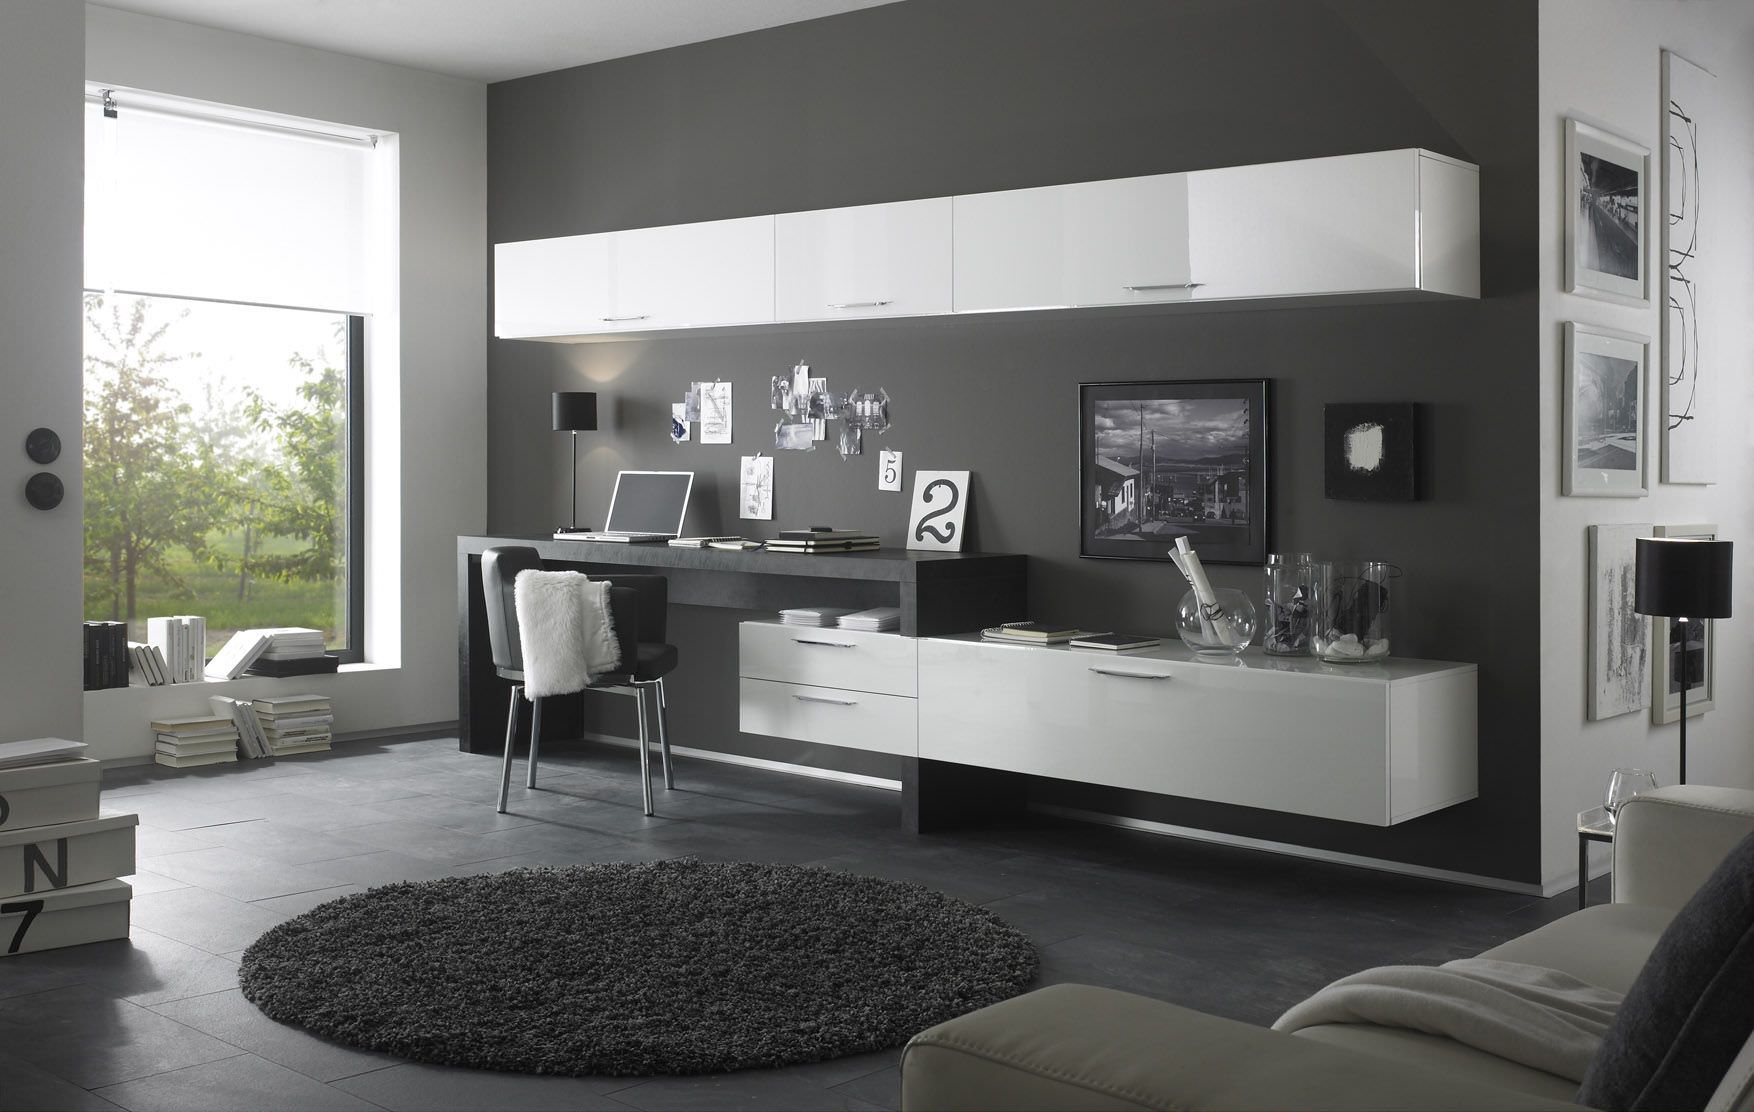 Tông màu xám được sử dụng làm màu chủ đạo cho hầu hết nội thất phòng khách đem lại sự cuốn hút cho không gian